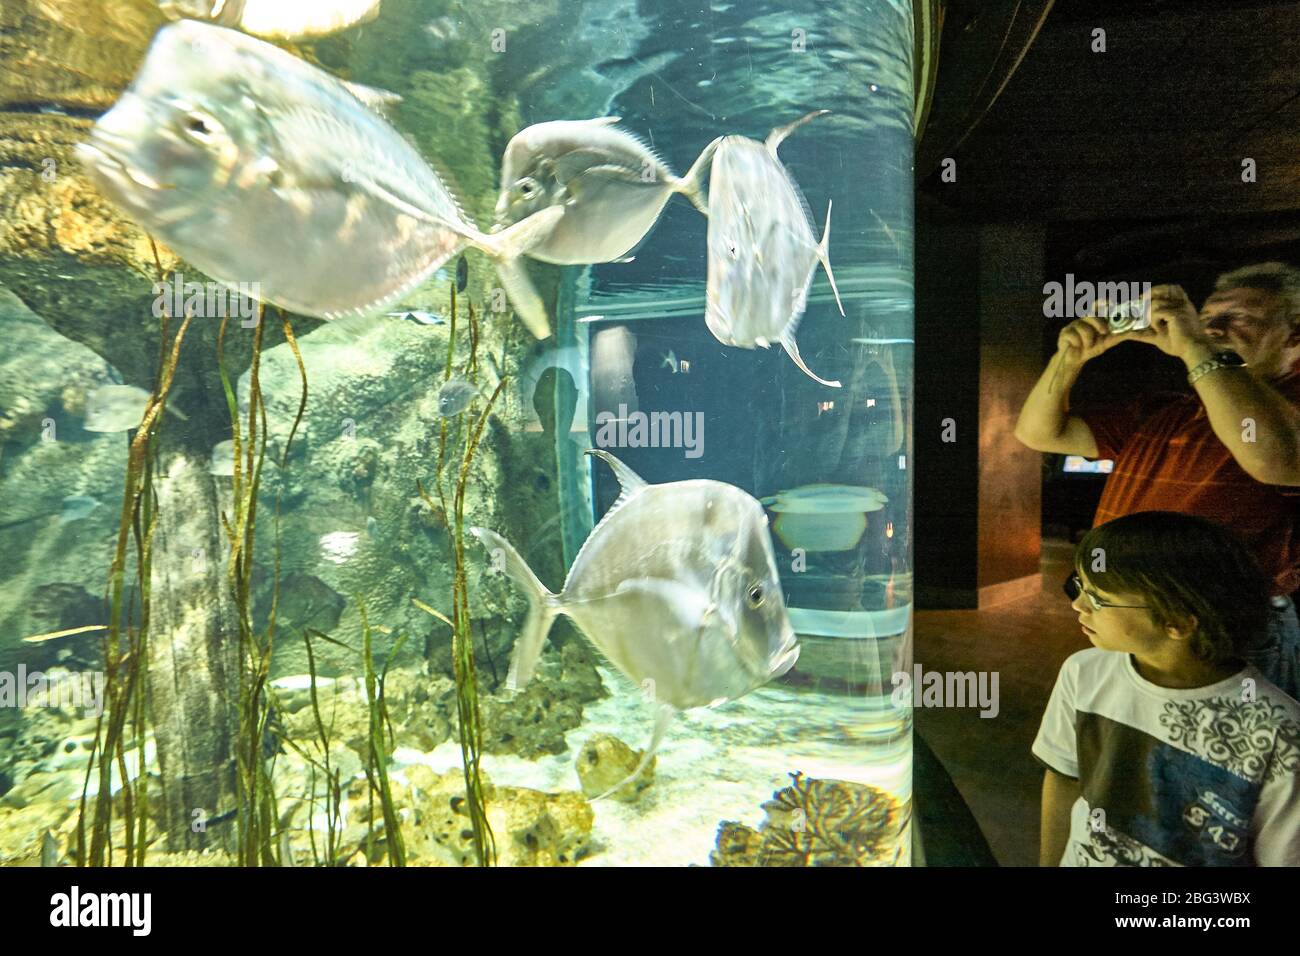 Besucher des Hamburger Zoos Hagenbeck dienen den Fischen in einem großen Aquarium. Einer der Fische gibt den Blick zurück. Stockfoto